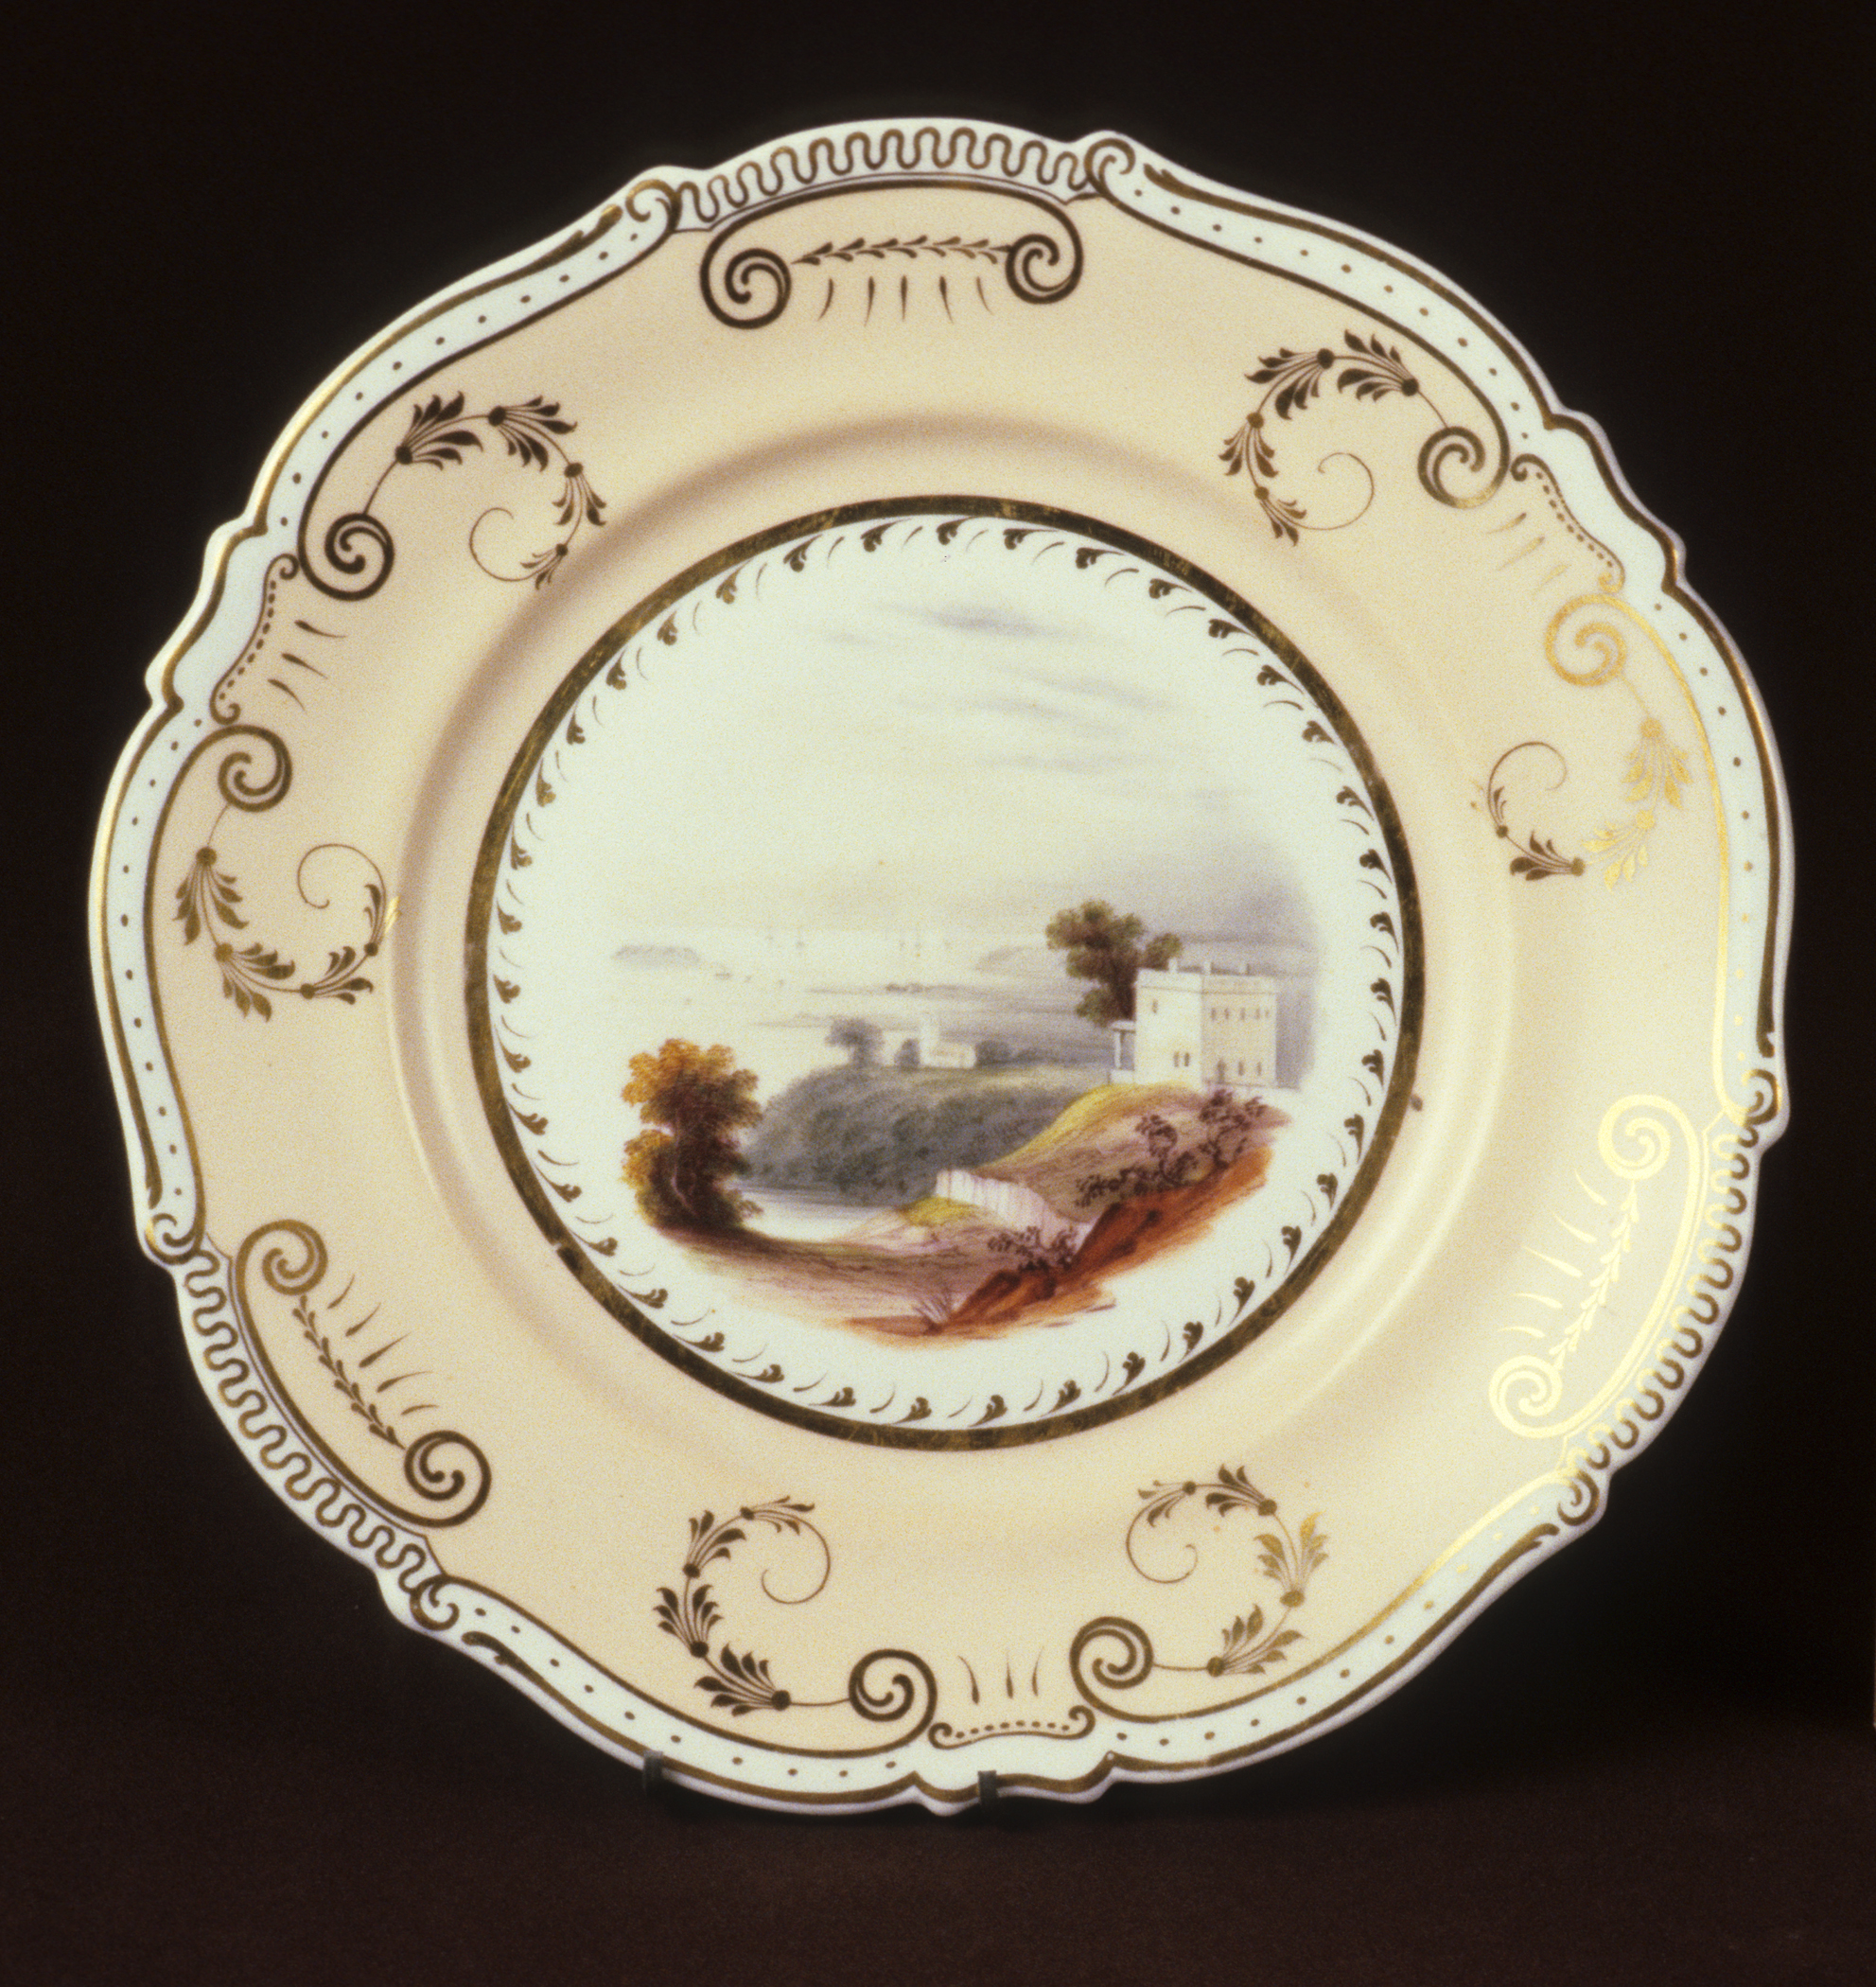 1972.0044.001 Soft-paste porcelain plate